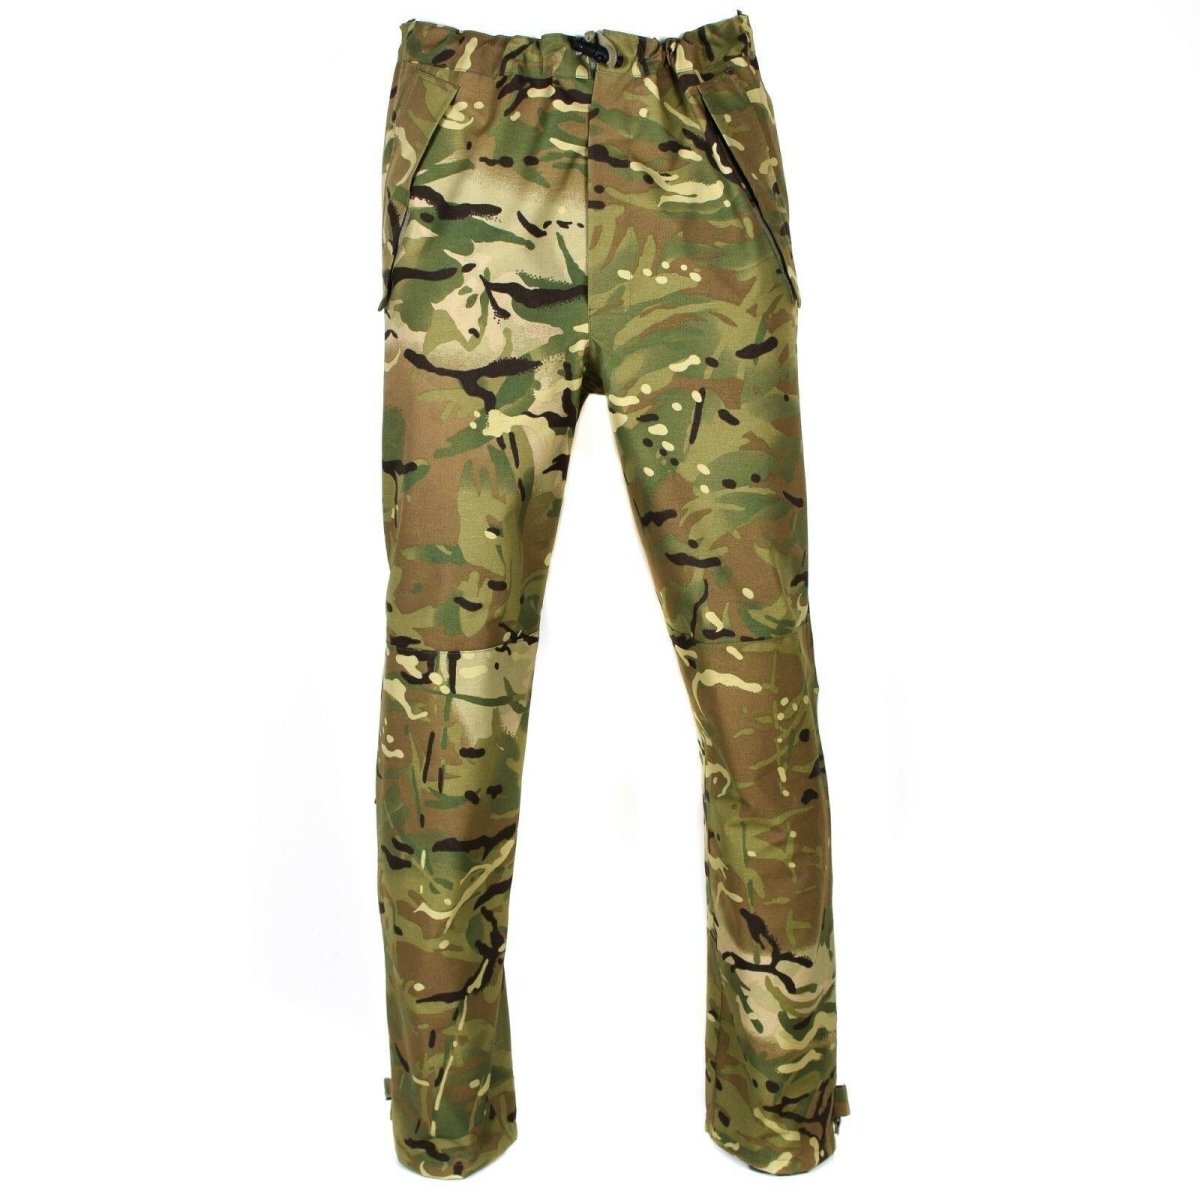 genuine british army military combat mvp mtp camo pants waterproof goretex new 155252